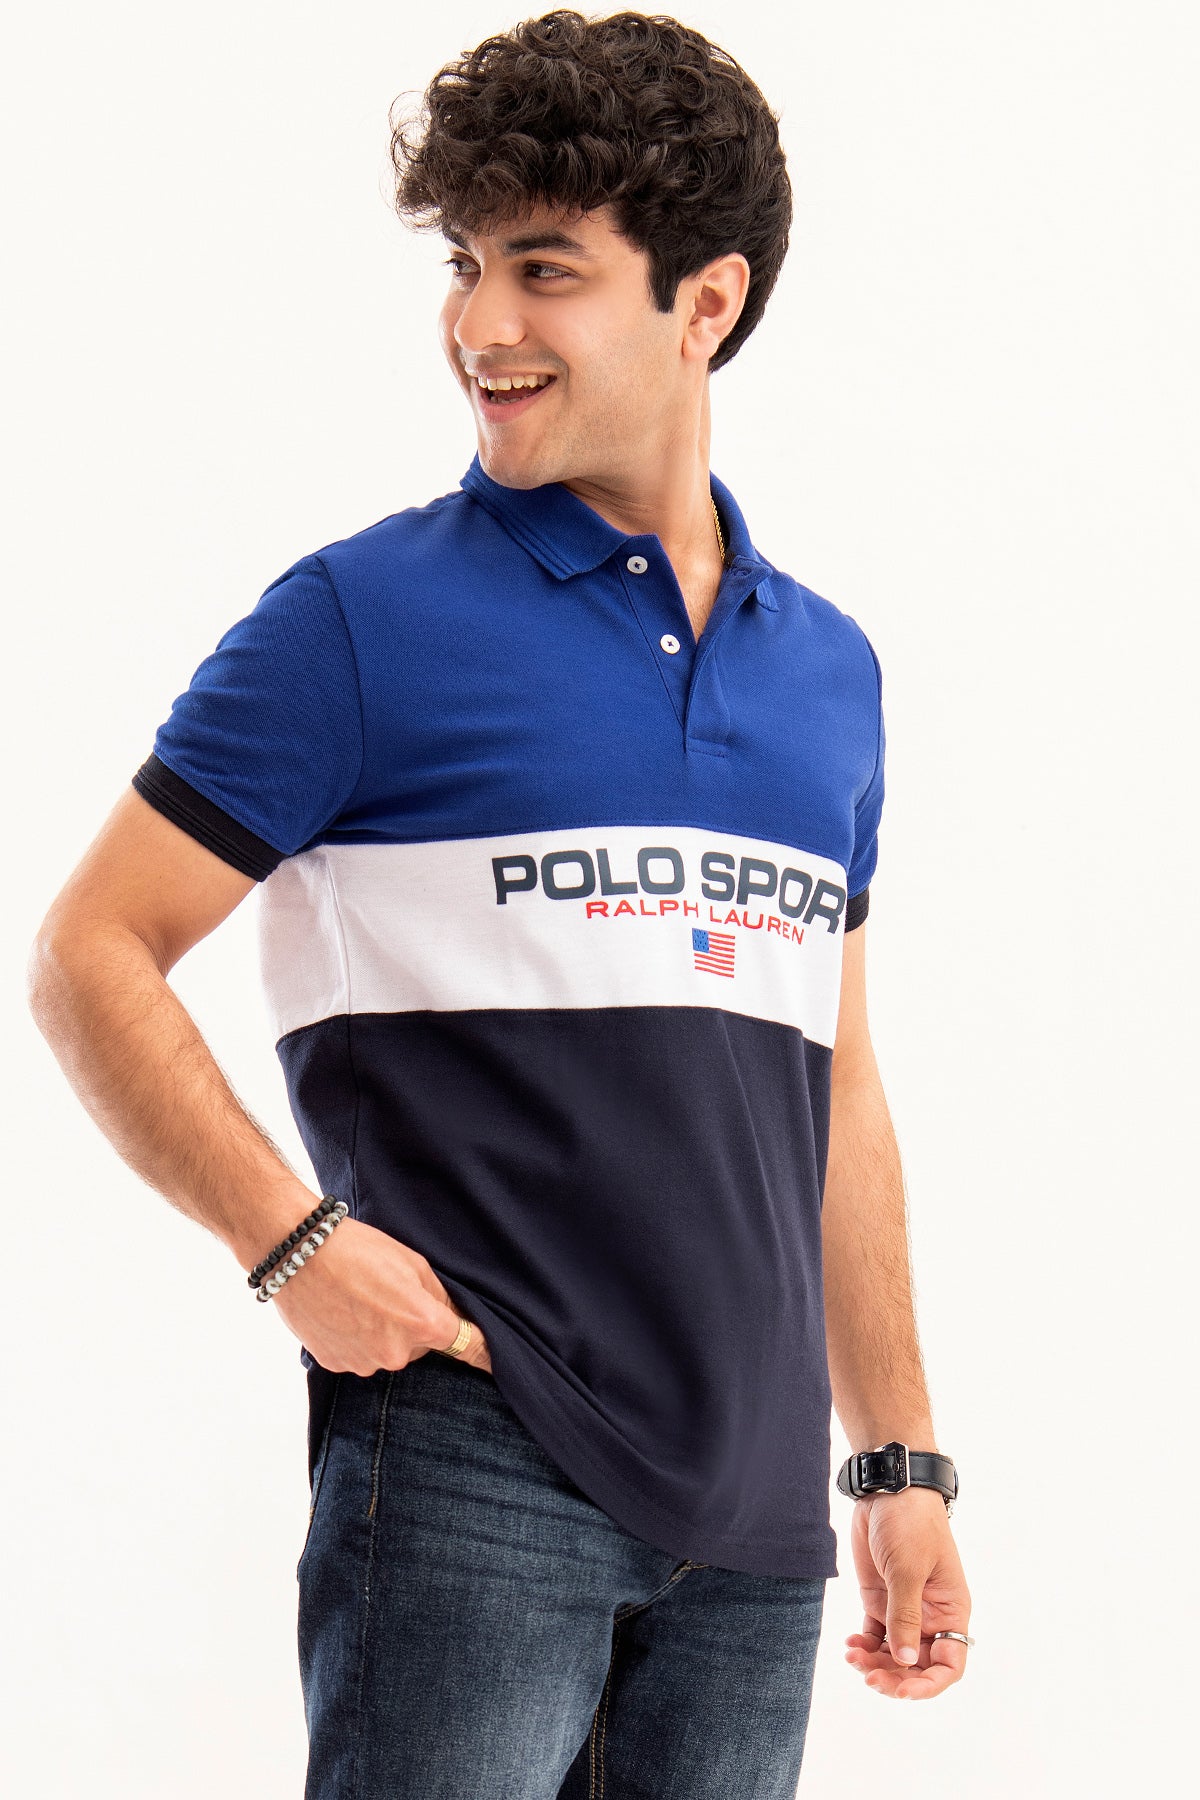 POLO SPORT RL Polo